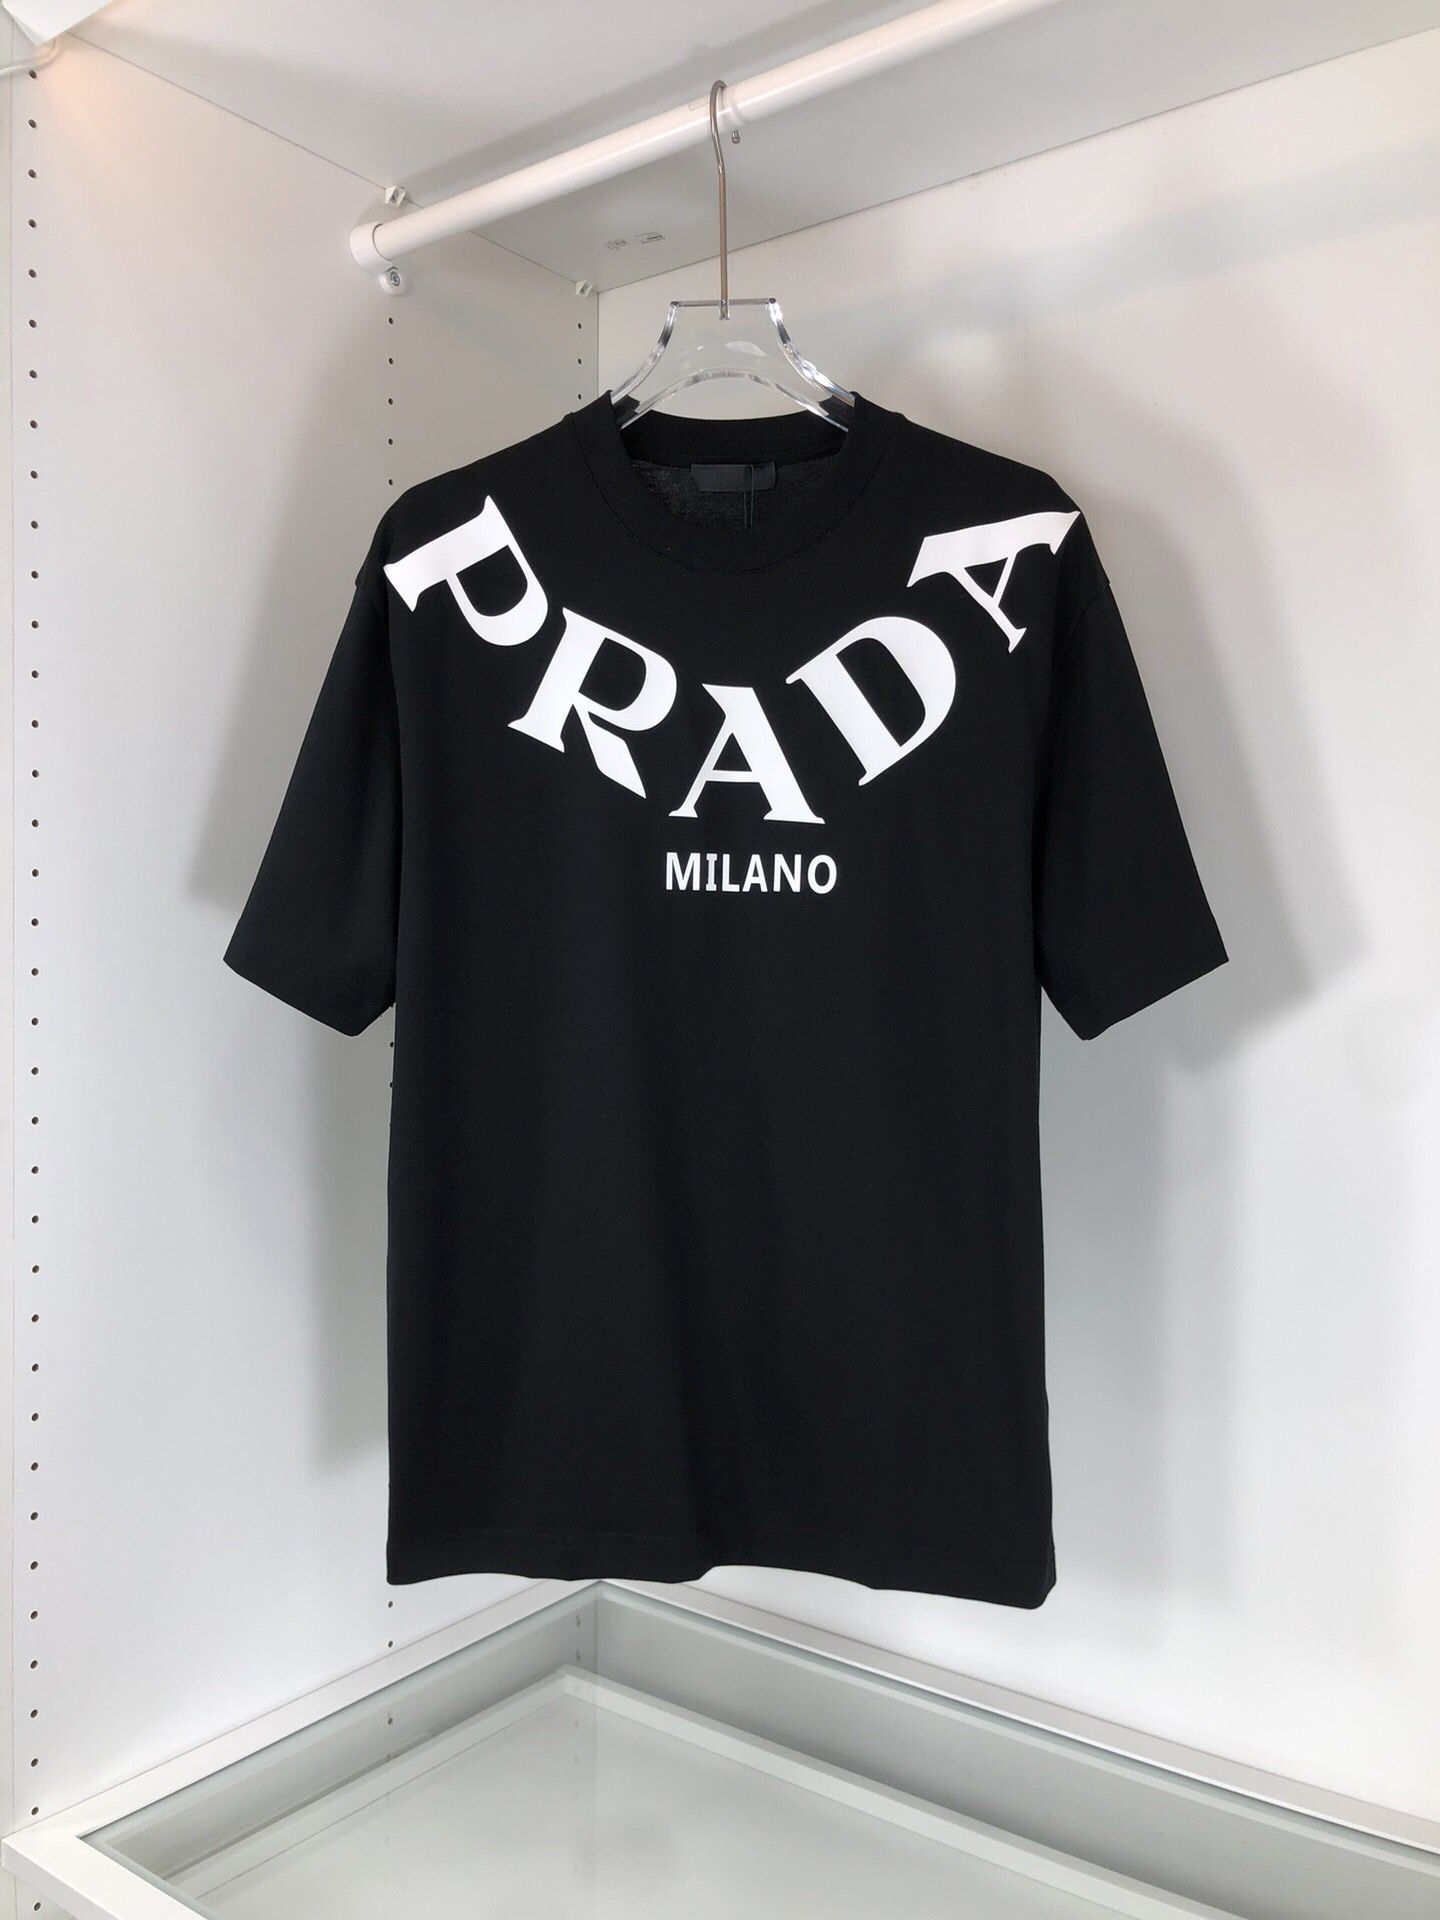 Prada T-shirt New Brand 